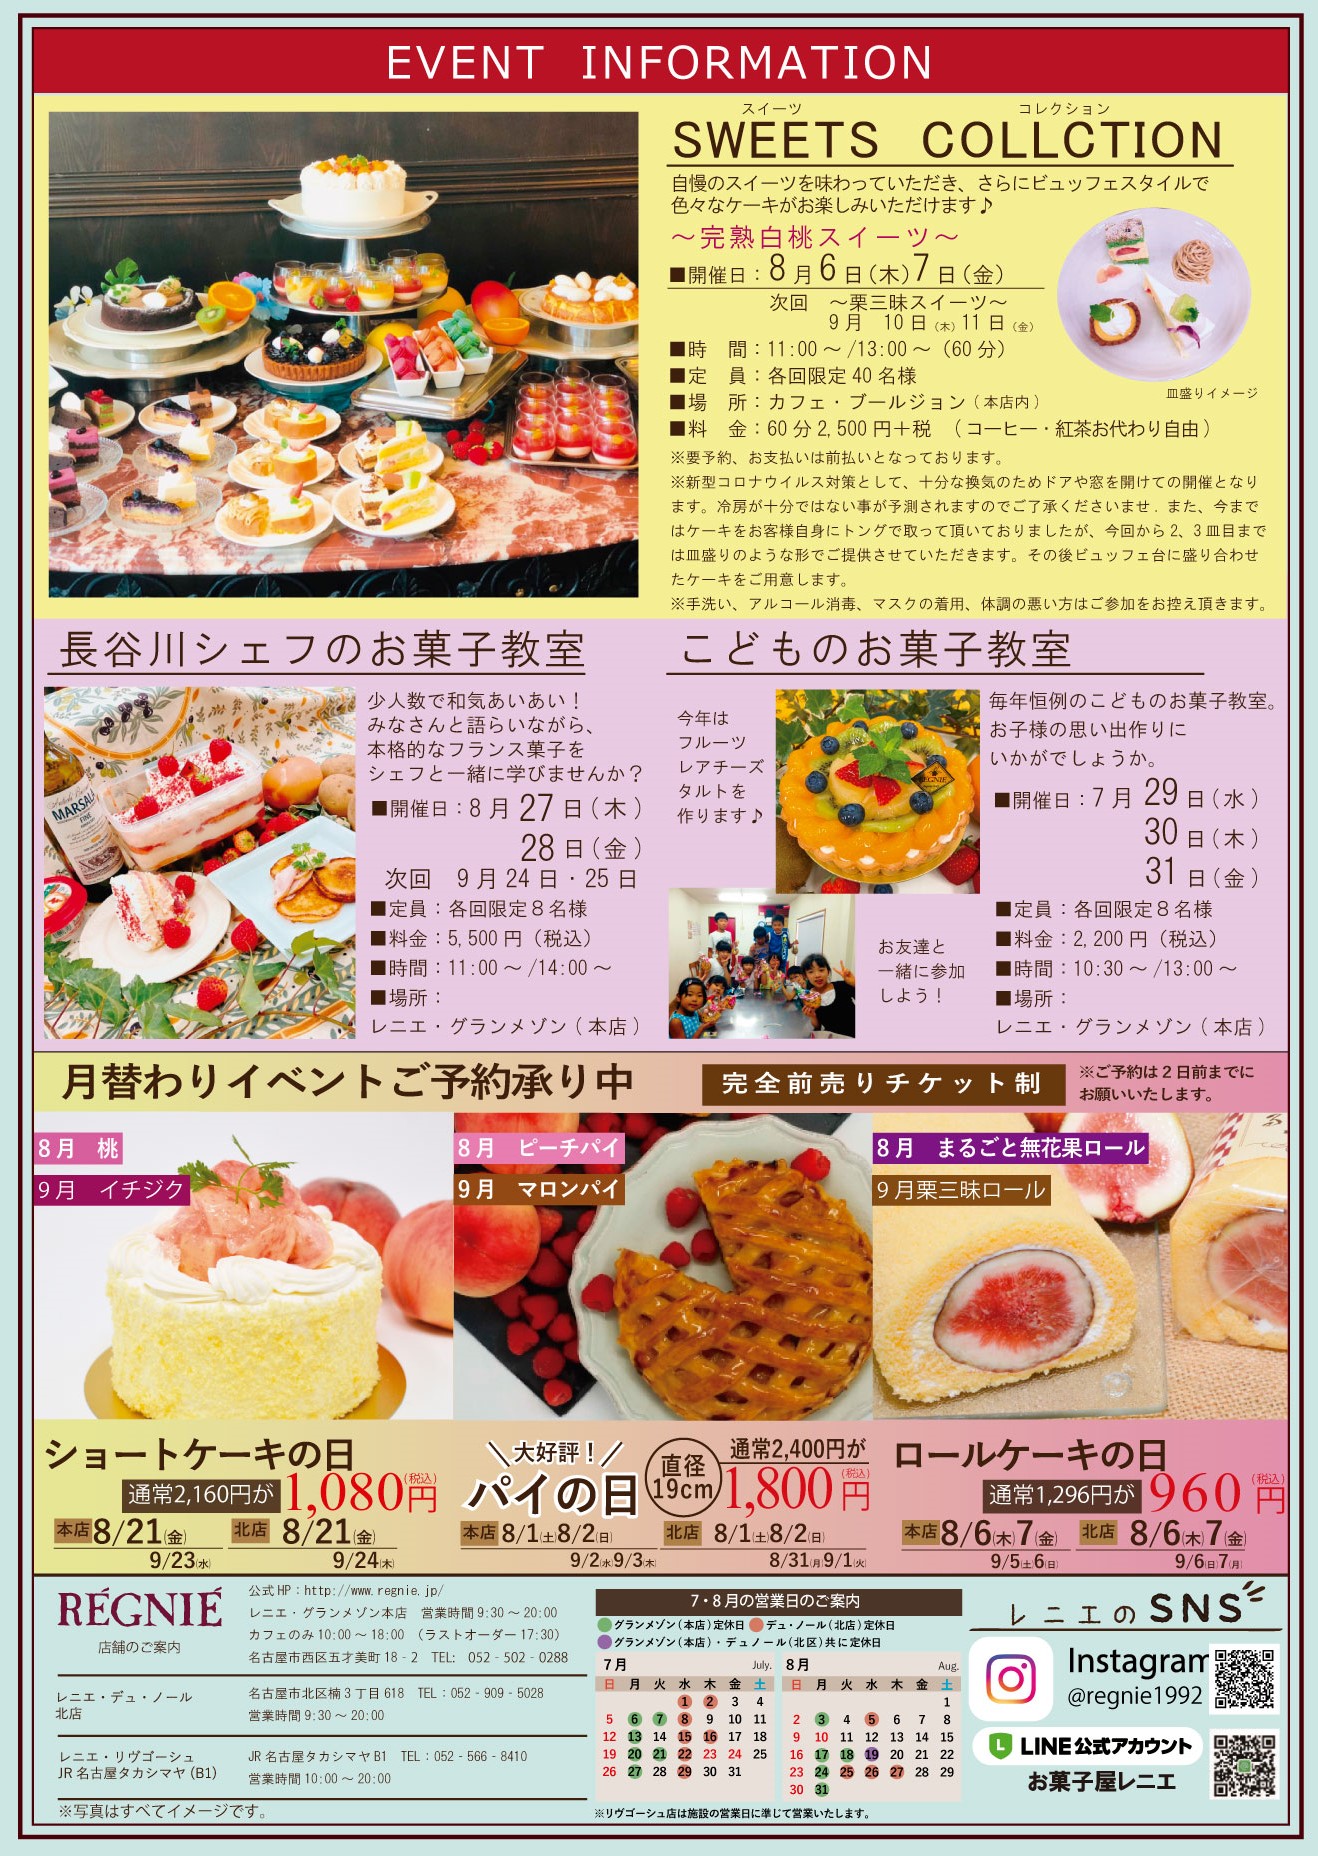 スイーツビュッフェ名古屋の安い人気店はどこ 食べ放題を徹底調査 ヒデくんのなんでもブログ